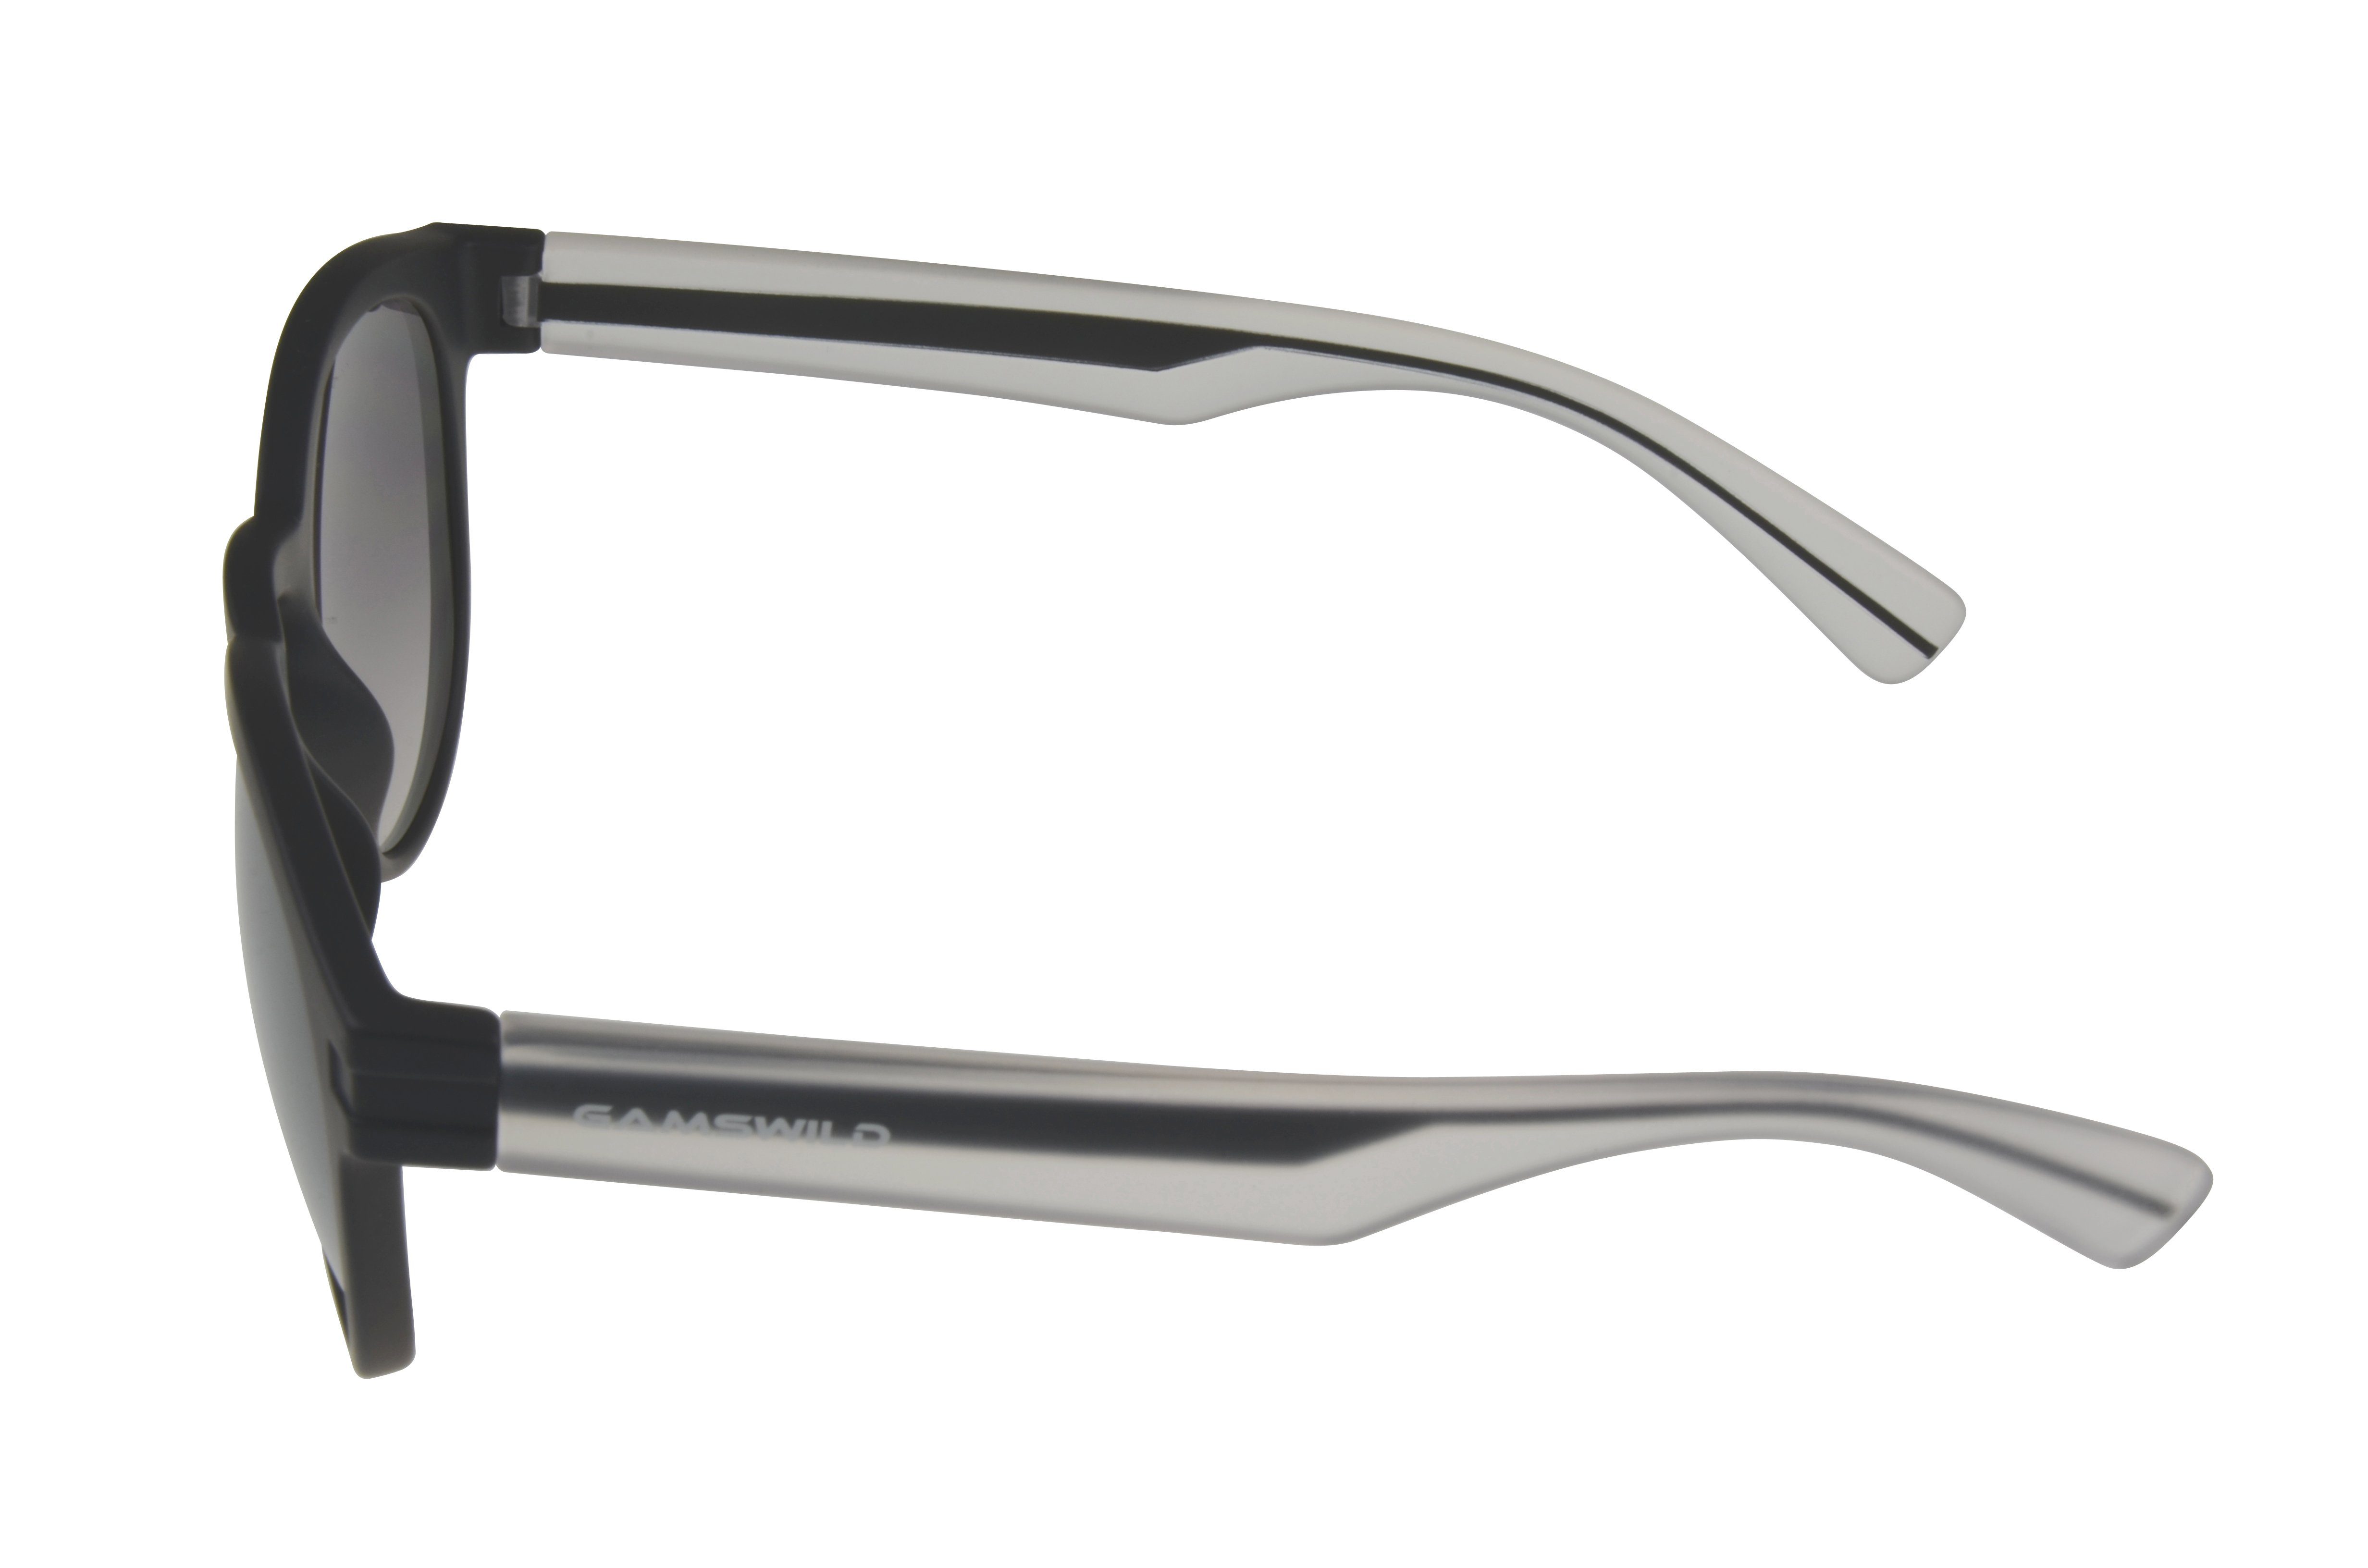 Gamswild Sonnenbrille WM7525 schwarz Herren halbtransparenter Modebrille GAMSSTYLE Damen Bügel Unisex